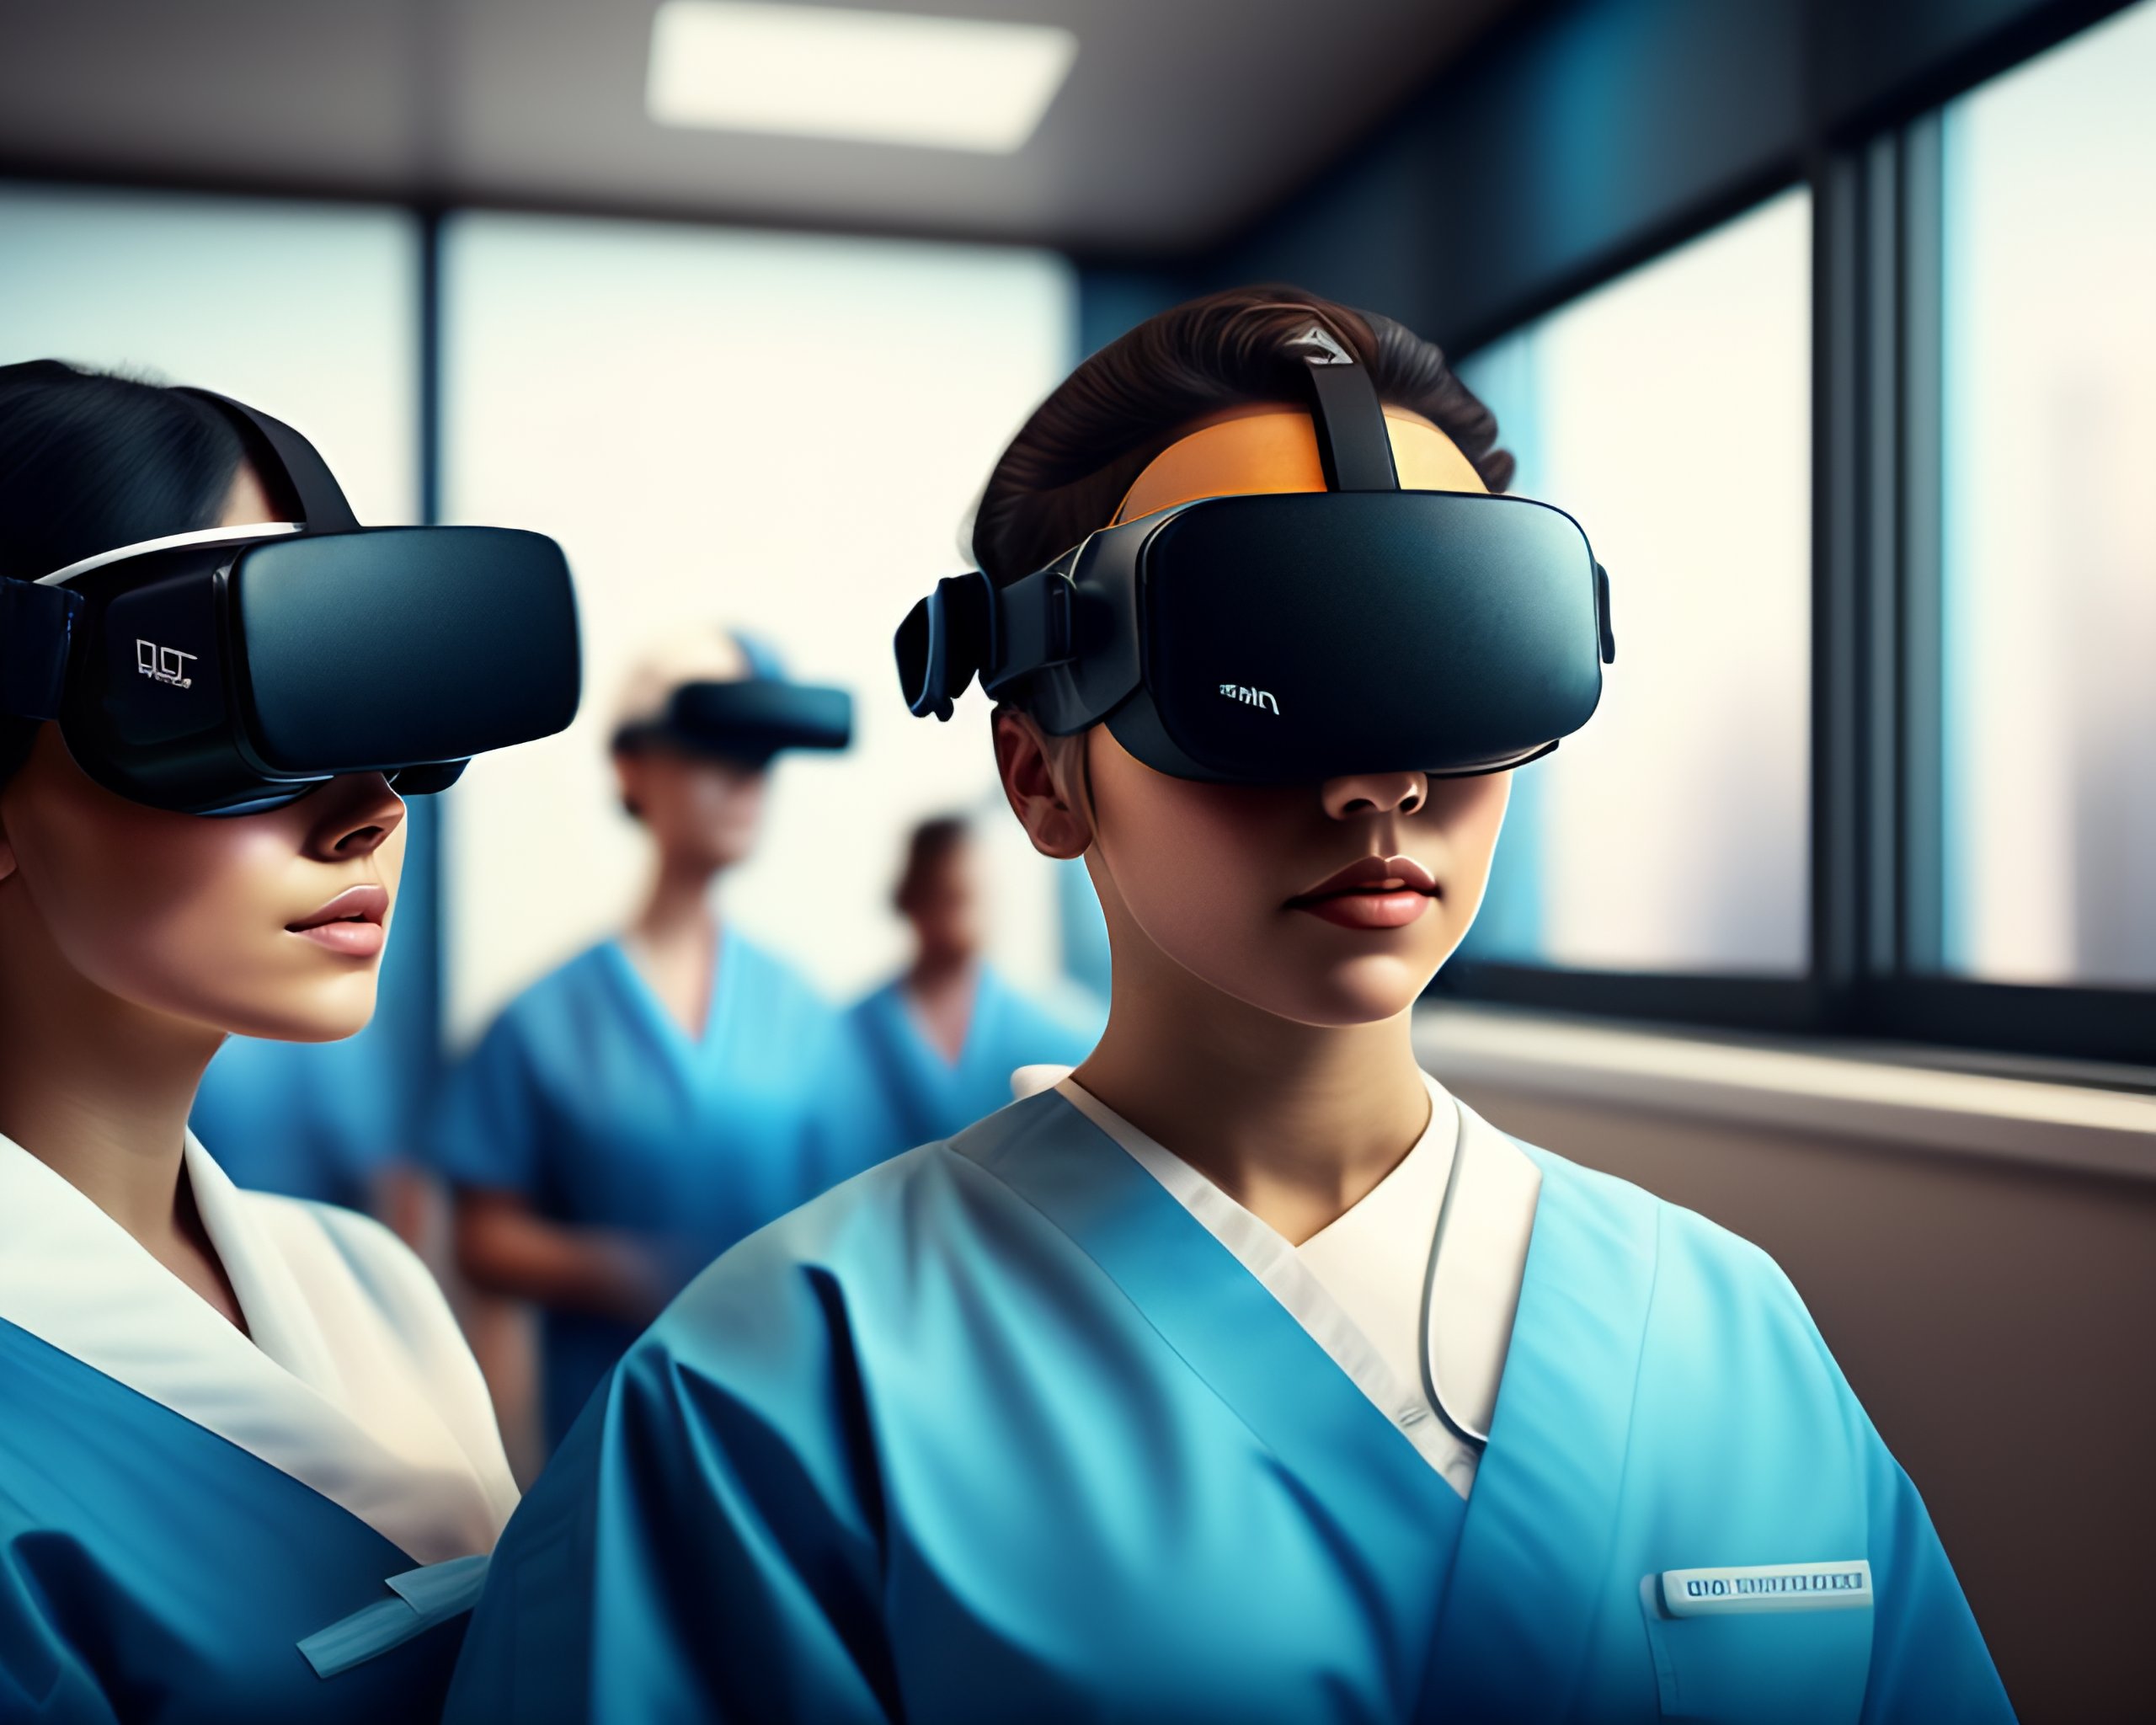 Impacto de la práctica radiográfica con realidad virtual en el estudiante: rendimiento en la práctica clínica.